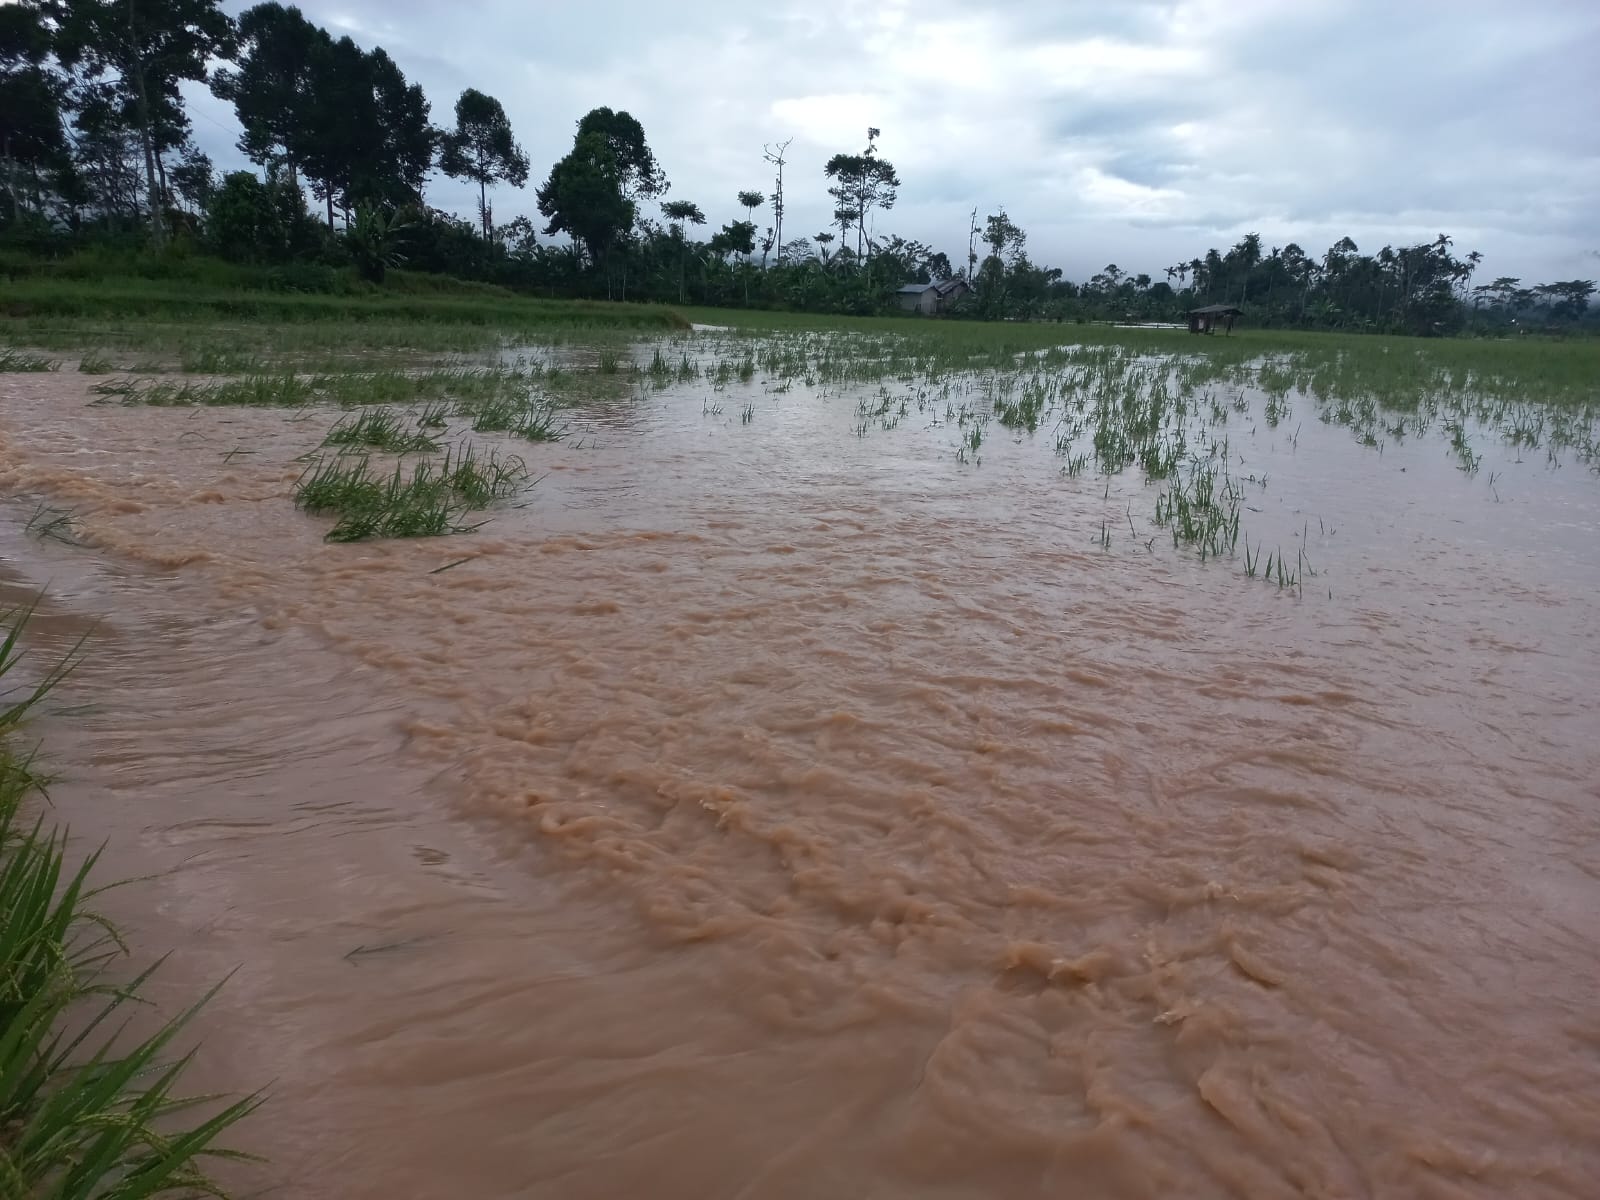 Puluhan Hektar Sawah di Kebun Tebu Terdampak Banjir Way Besai  